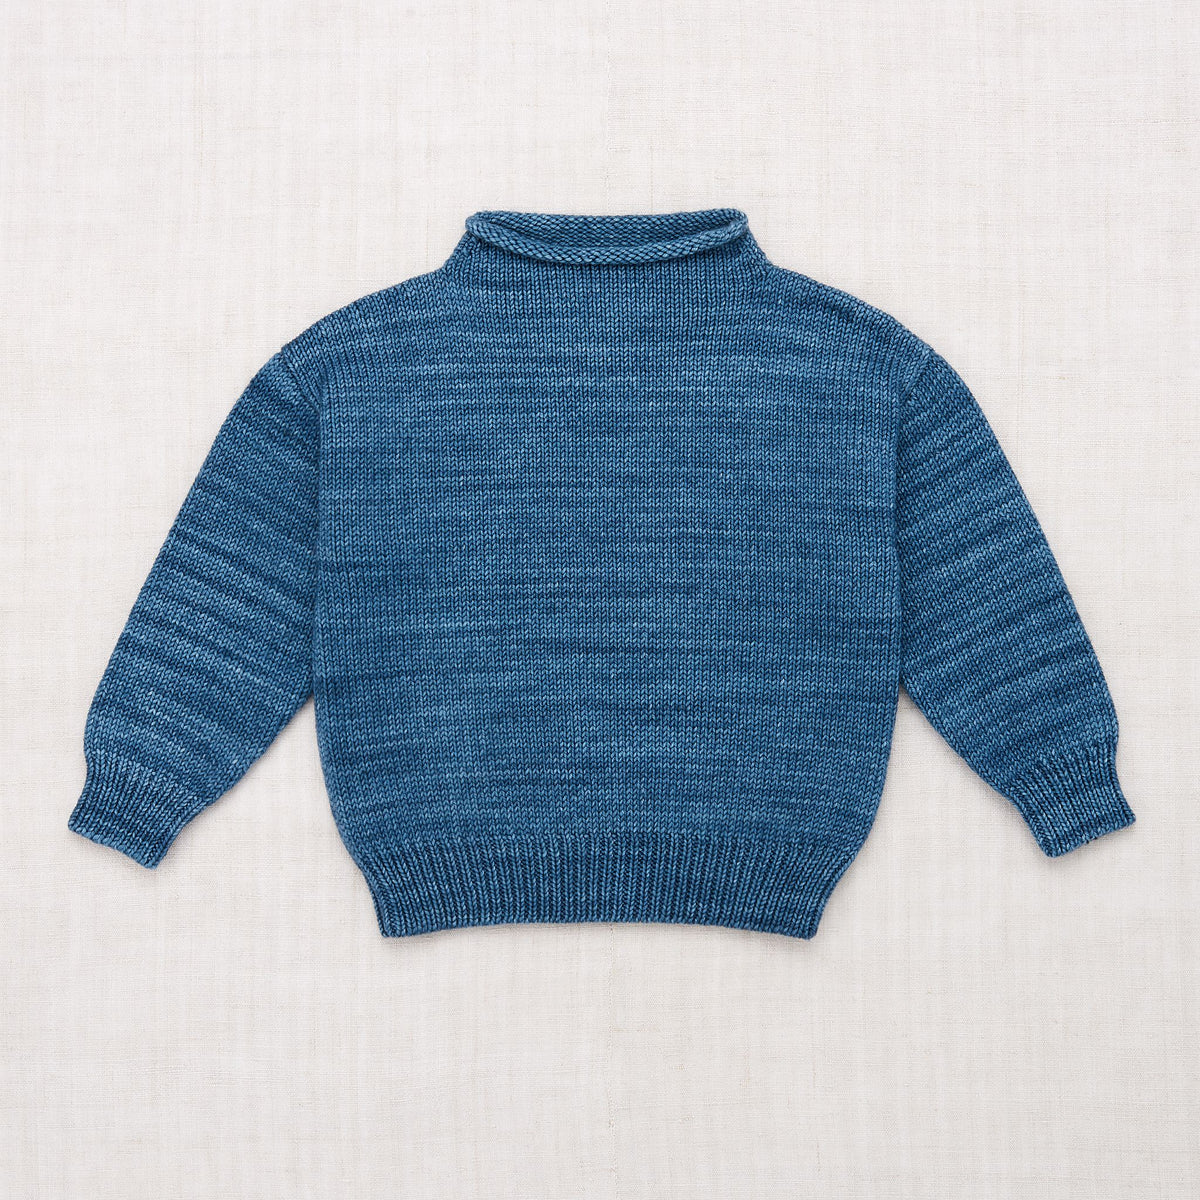 キッズ服女の子用(90cm~)misha&puff simple sweater